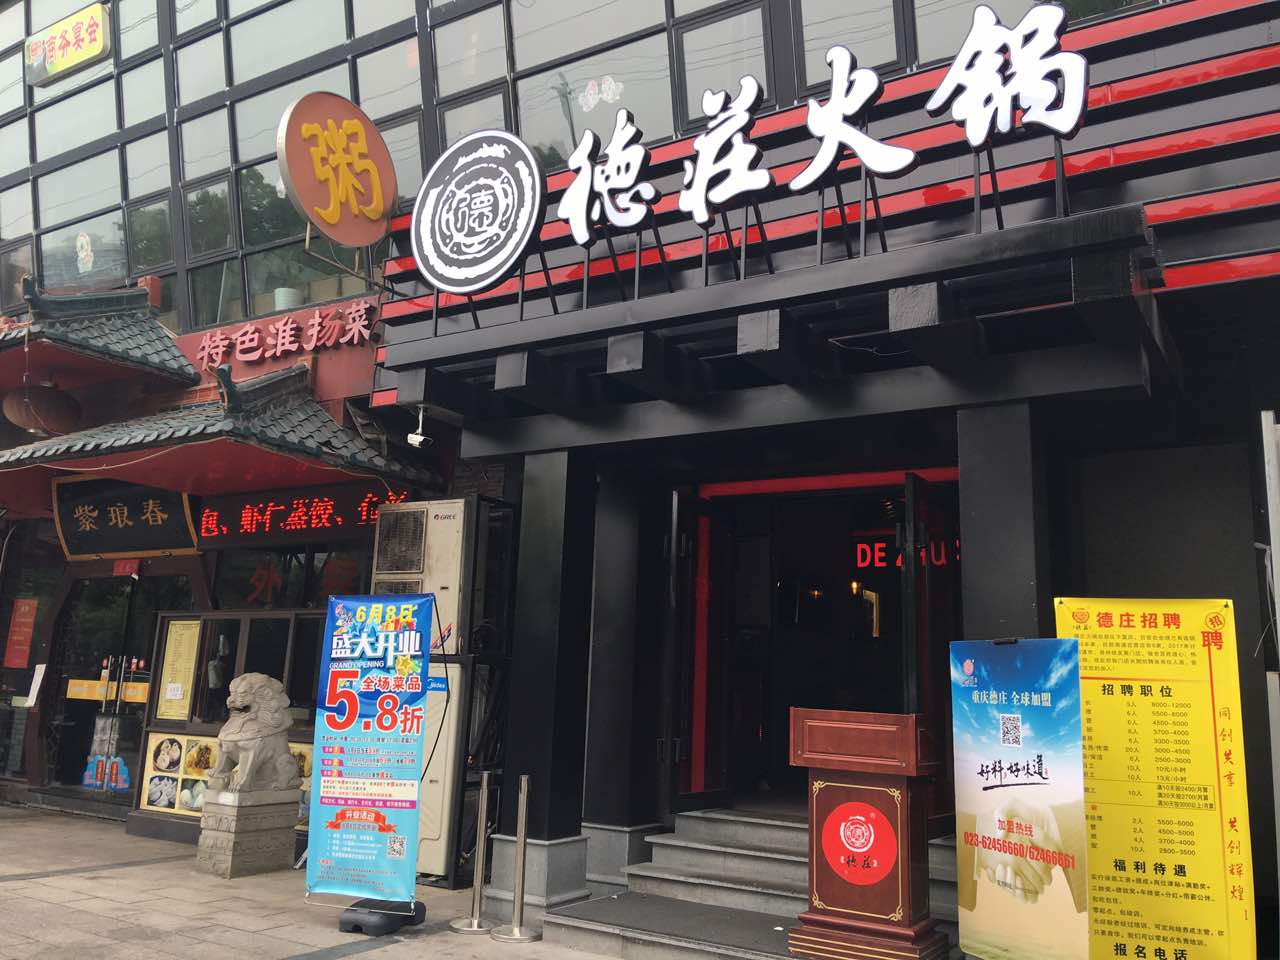 2021德庄火锅(五一路店)美食餐厅,火锅口味真的很好,而且人气